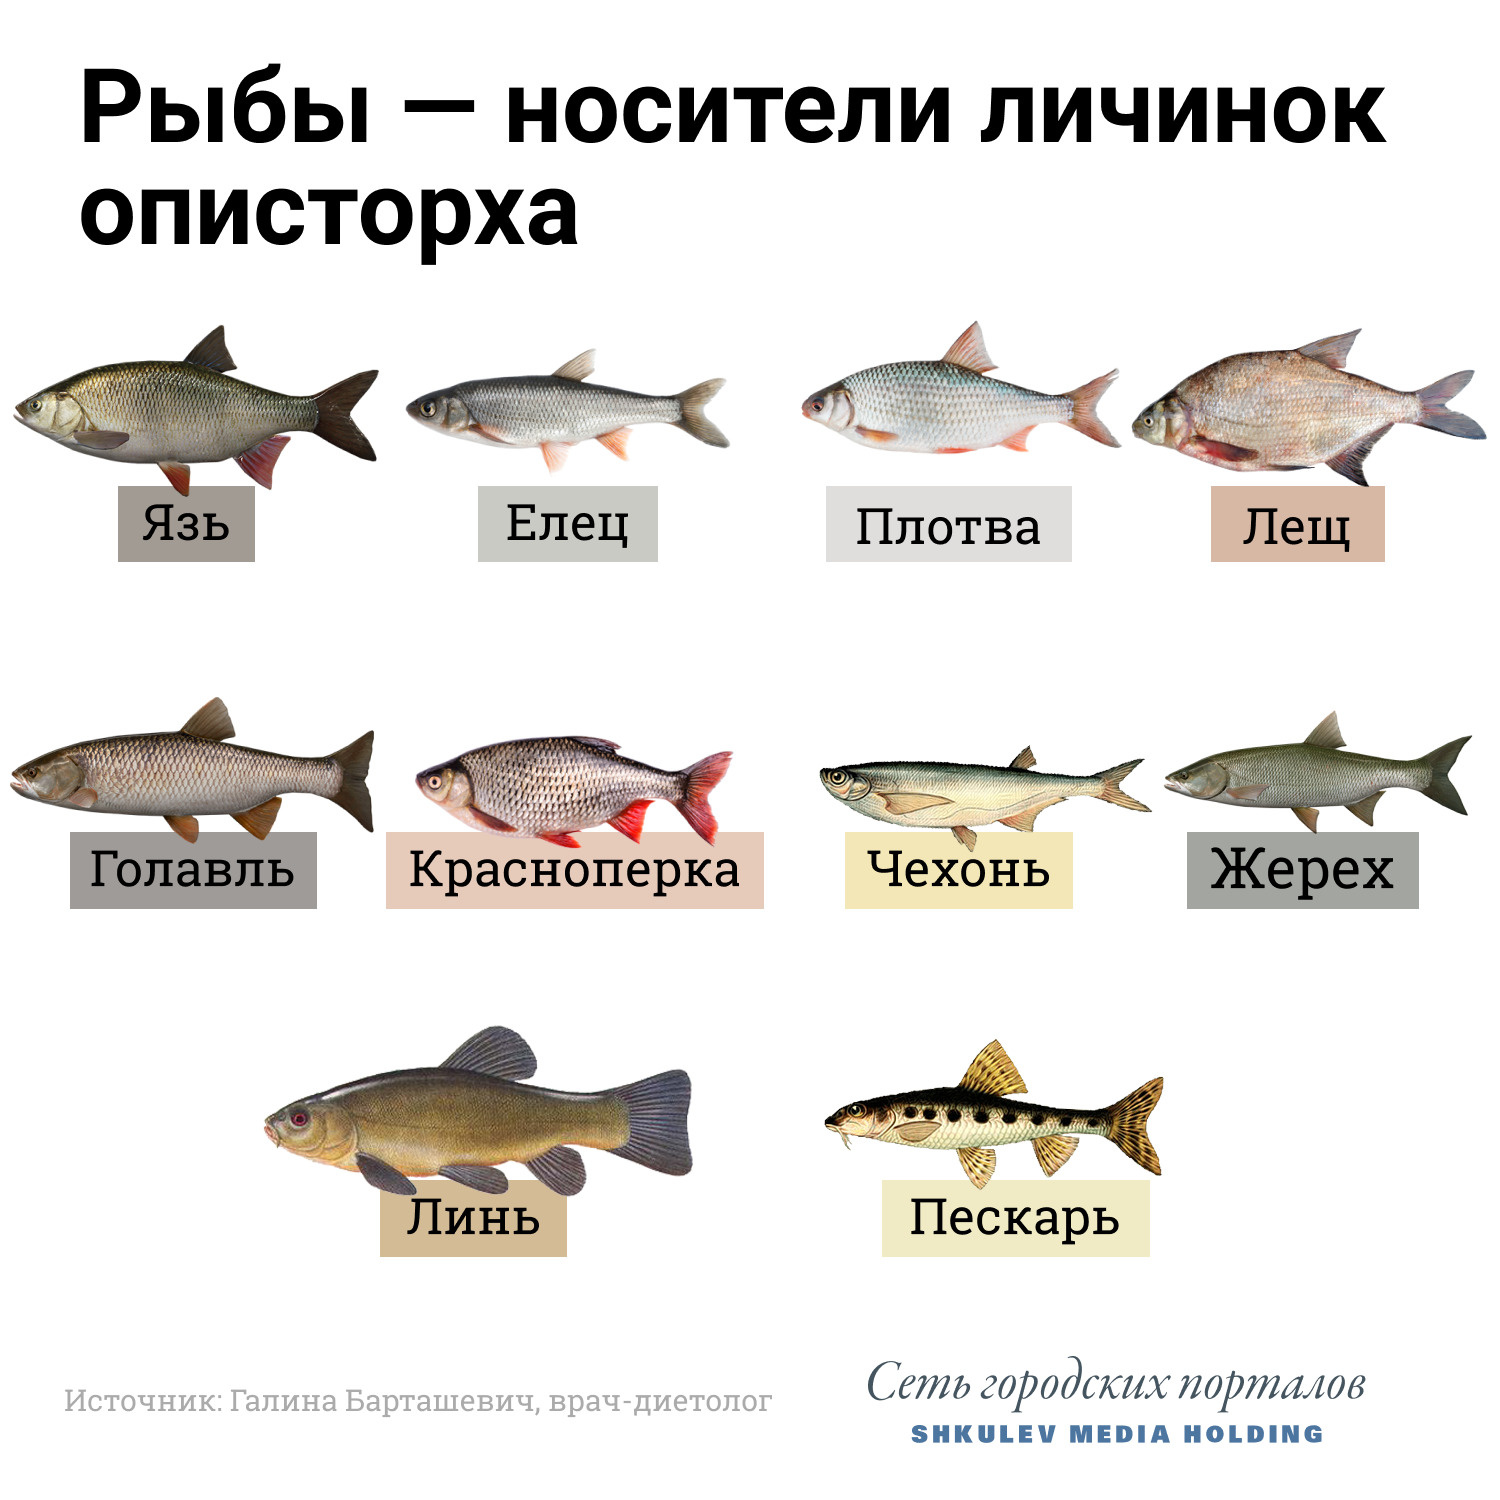 Виды рыб: фотографии, особенности и описание различных видов рыб